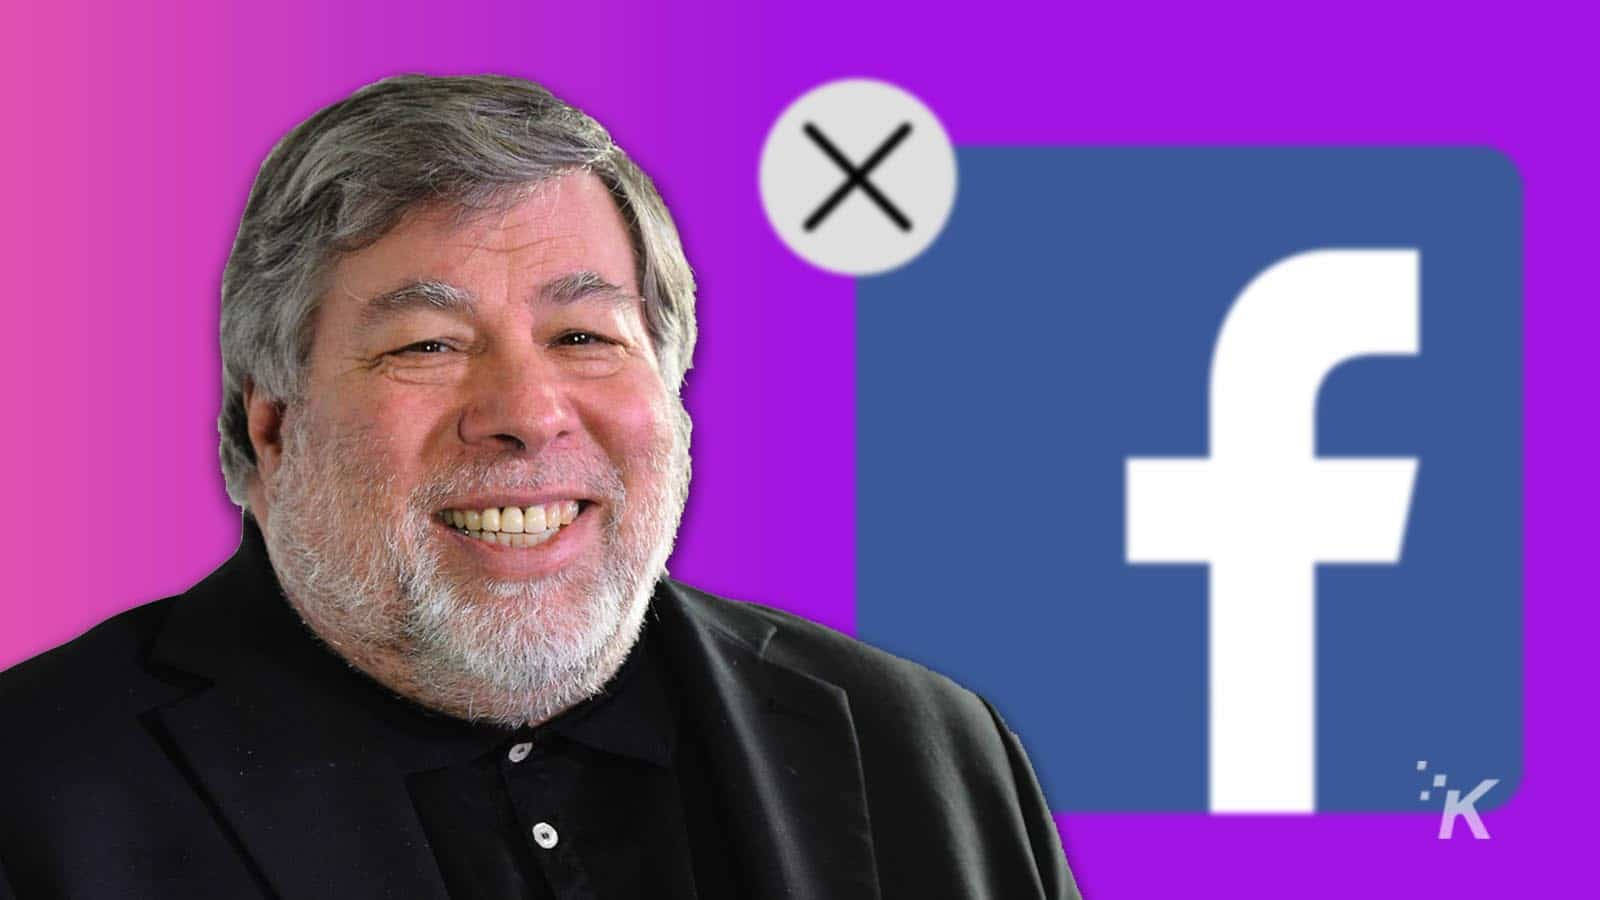 Steve Wozniak 1600 X 900 Wallpaper